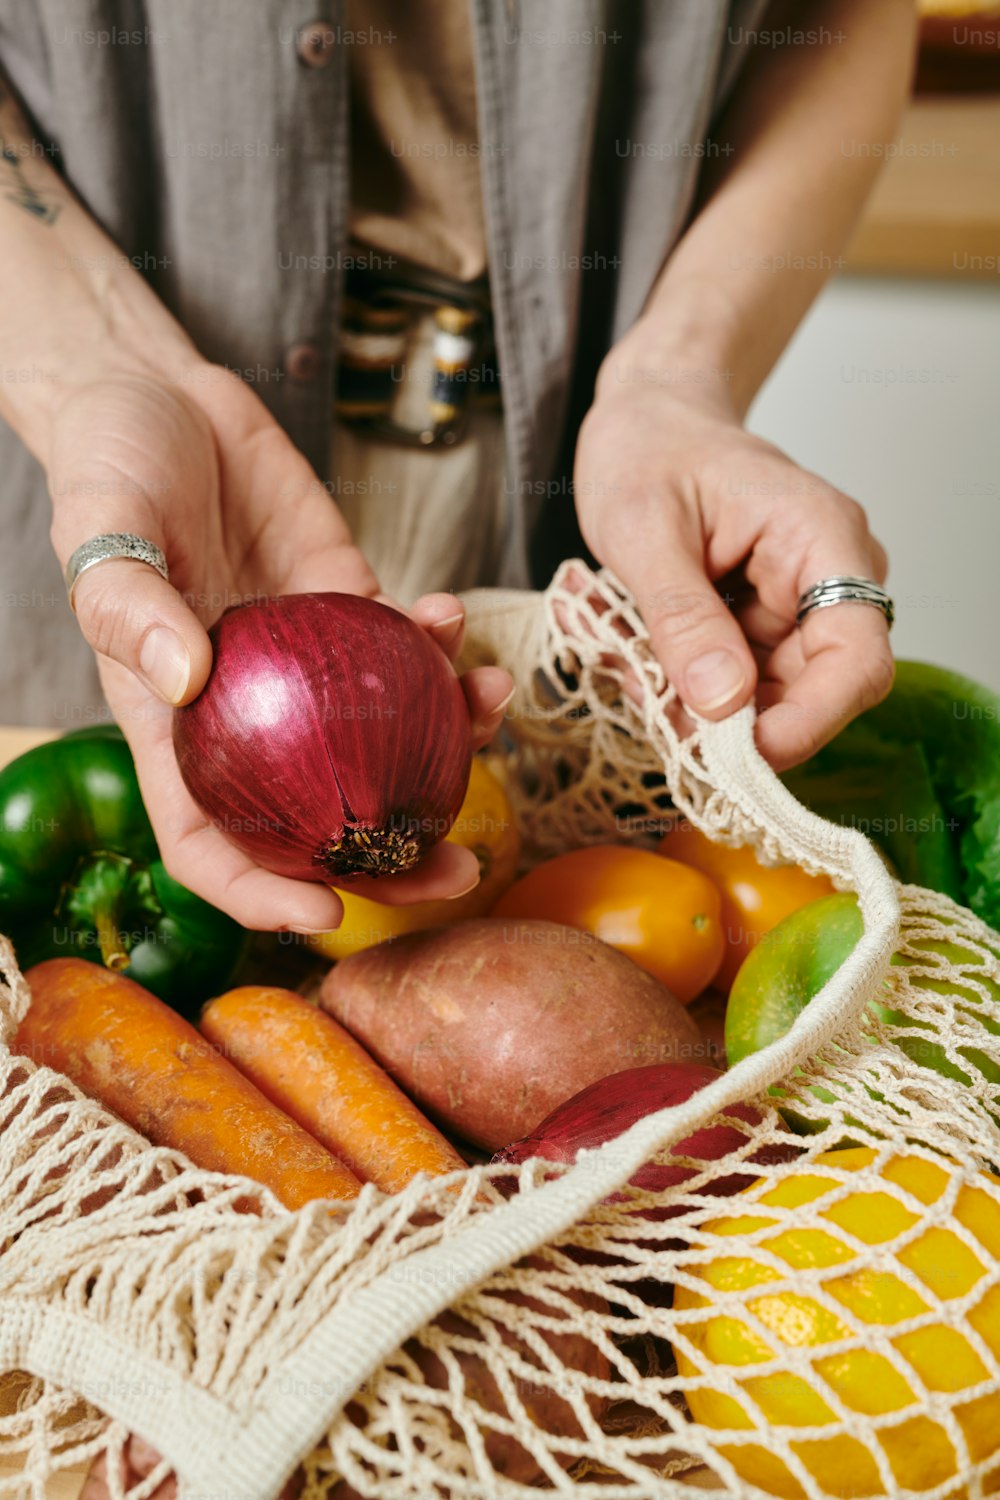 Femmina vegetariana che tiene la cipolla fresca sopra il sacchetto con altre verdure